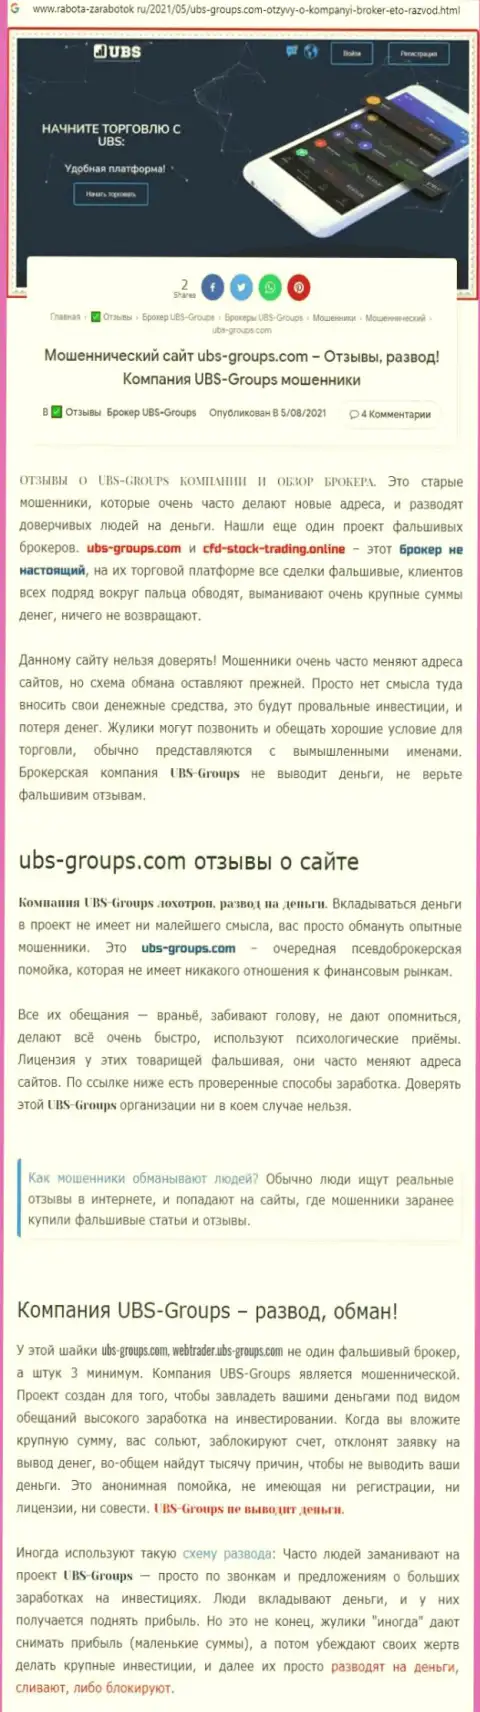 Создатель отзыва пишет, что UBSGroups - это МОШЕННИКИ !!!